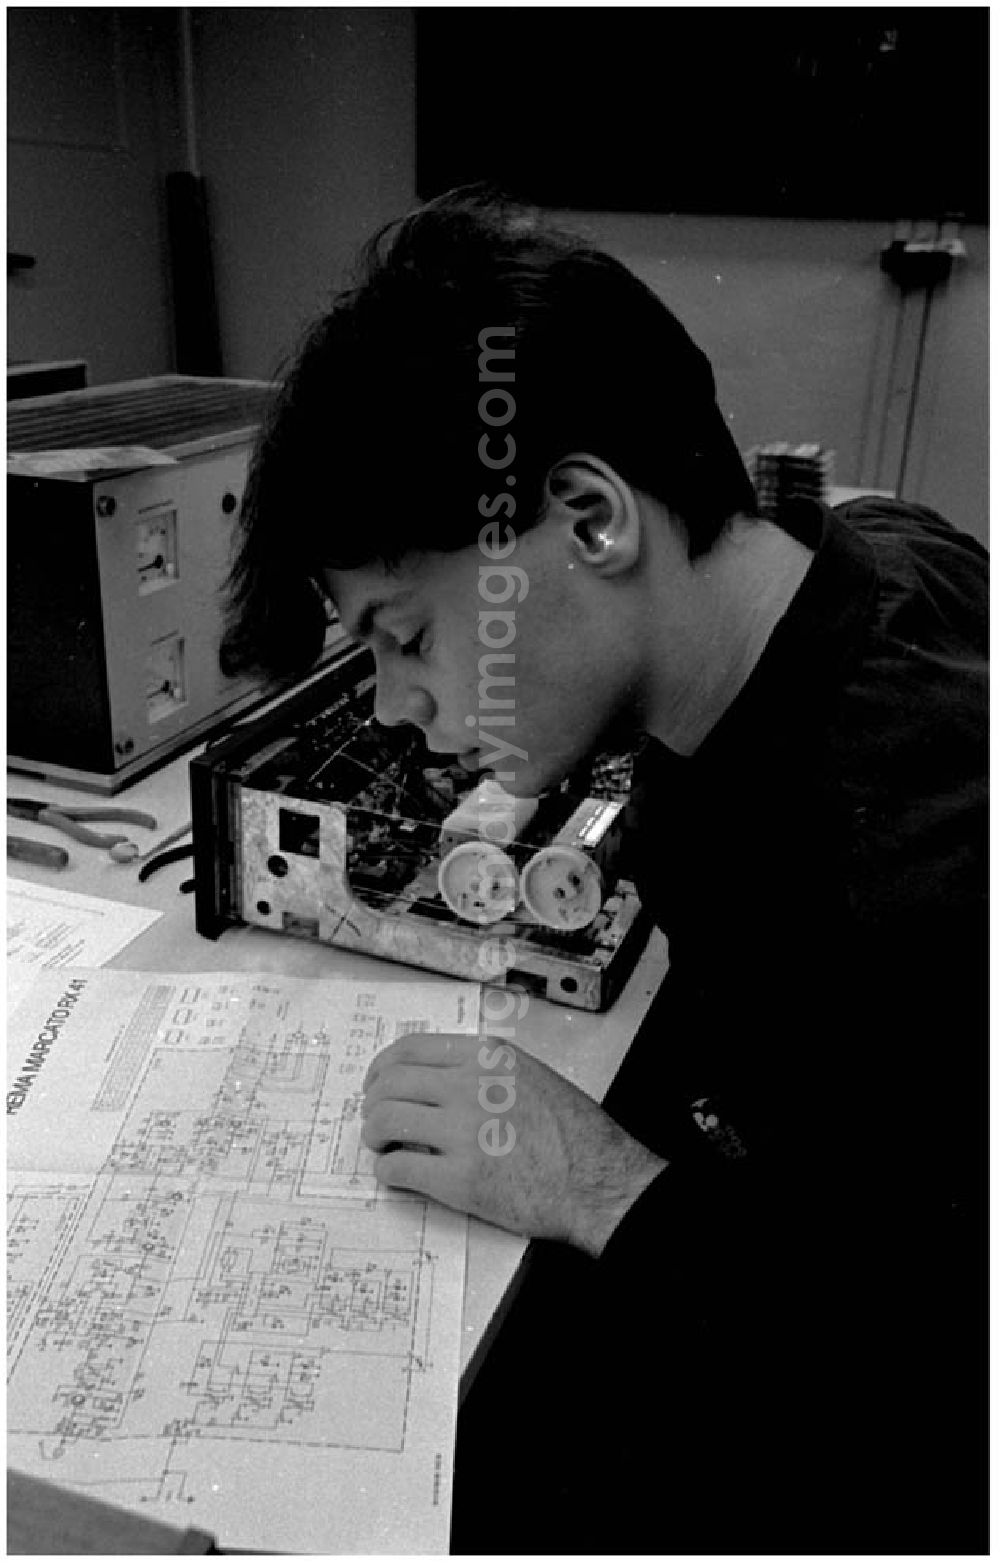 GDR picture archive: Berlin - 19.11.1986 Ausbildung für Funkmechaniker Lehrlinge in der Betriebsschule der VEB Industrievertrieb Rundfunk und Fernsehen.